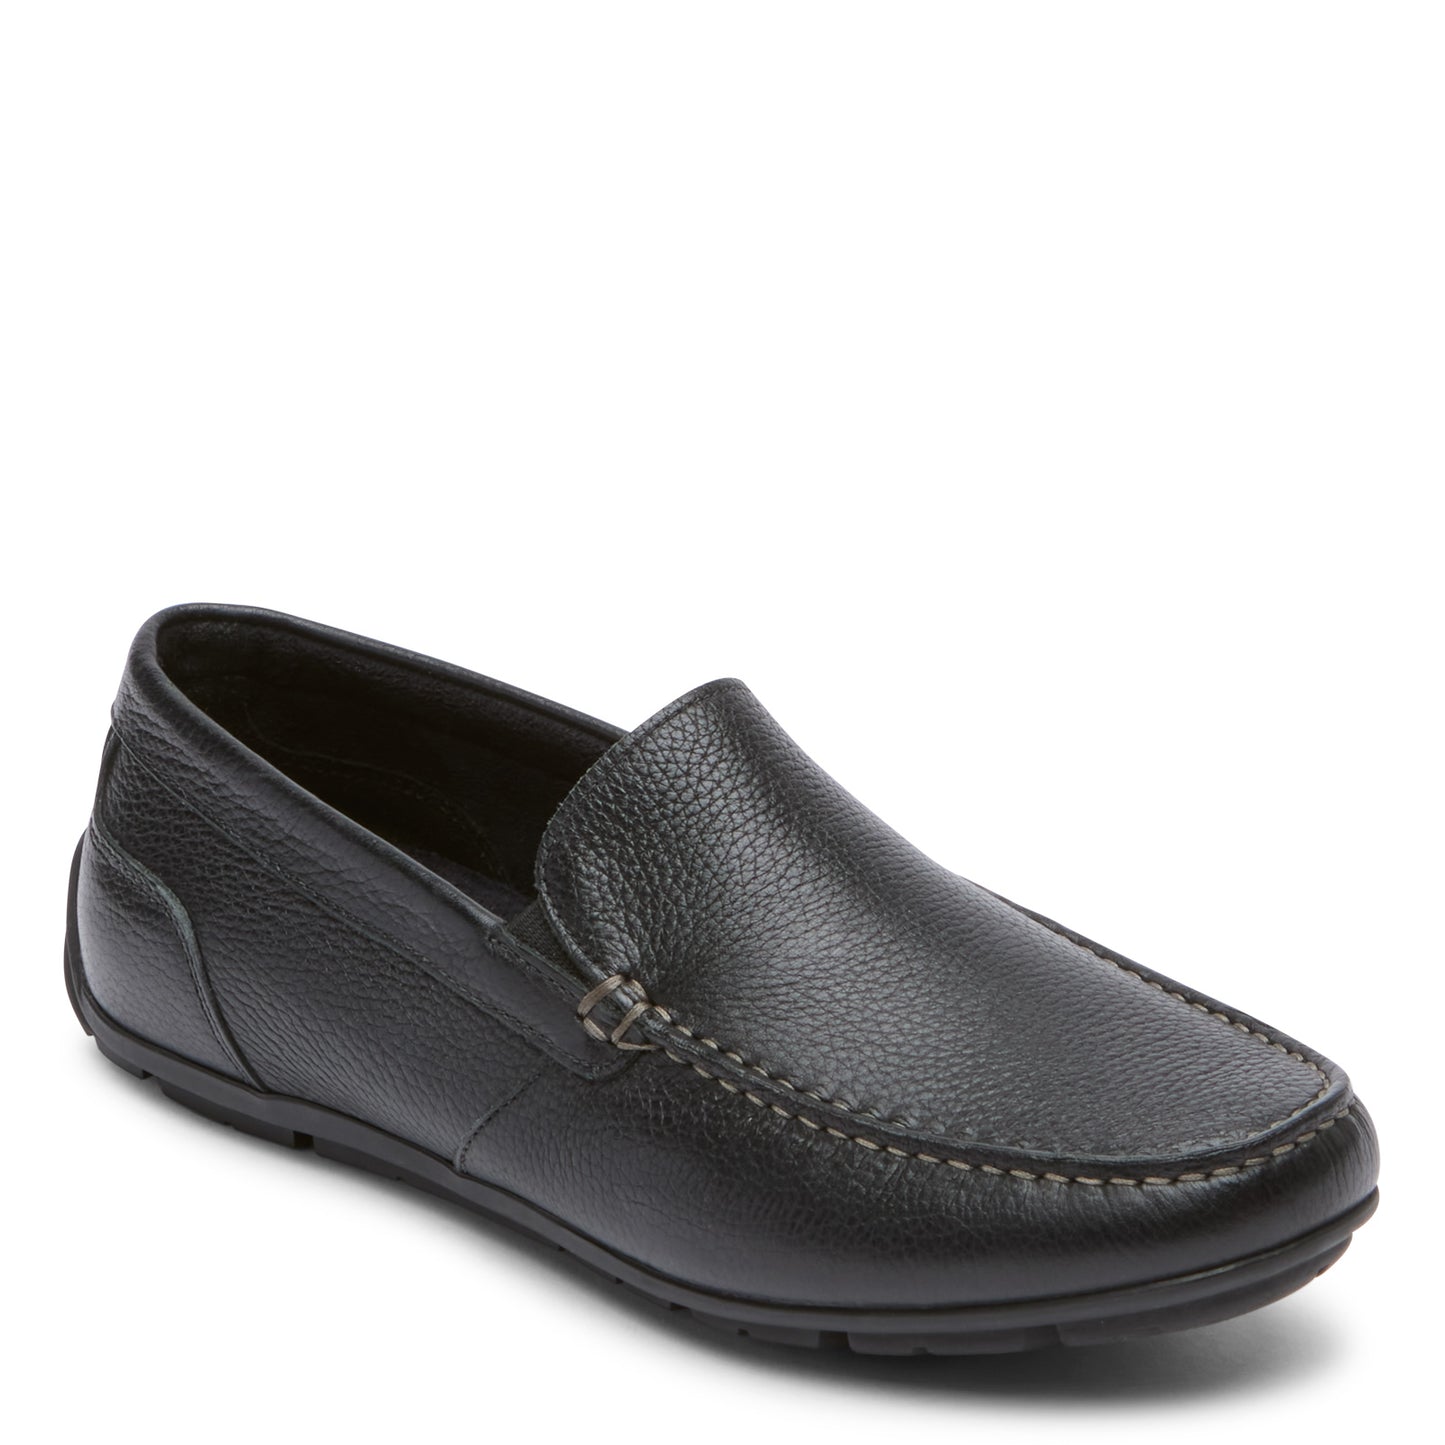 Peltz Shoes  Men's Rockport Warner Venetian Loafer Black CJ1442